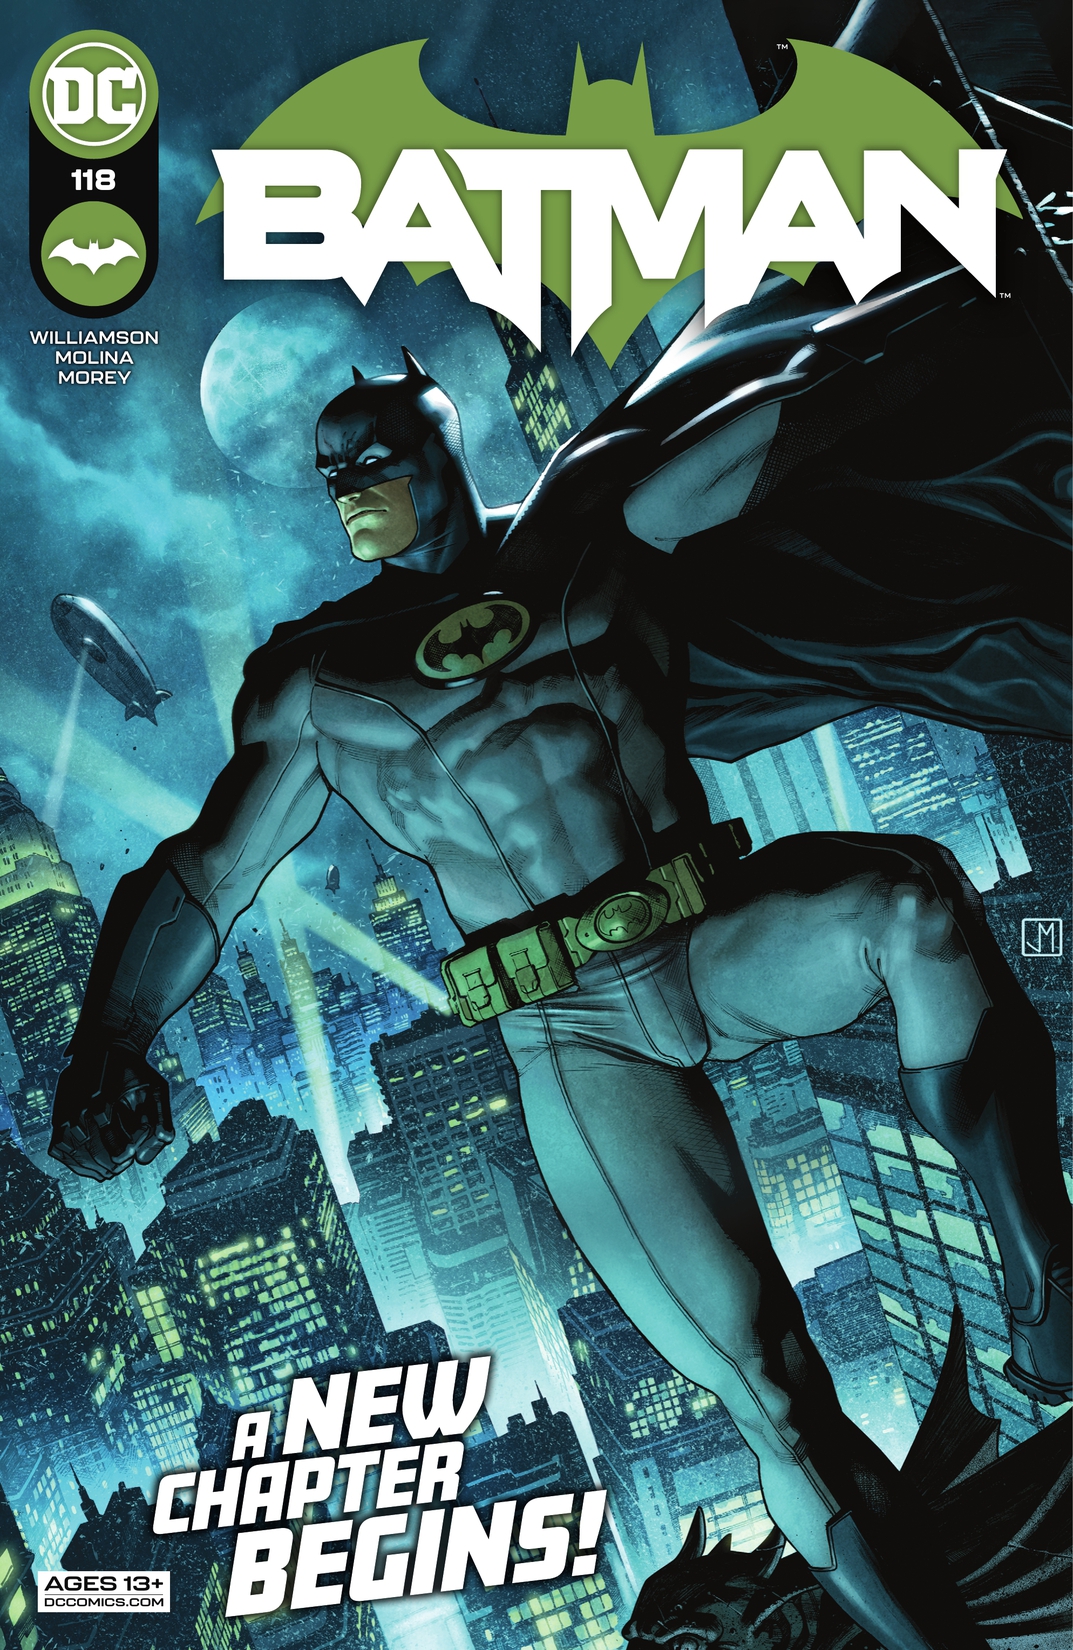 Batman (2016-) #118 preview images